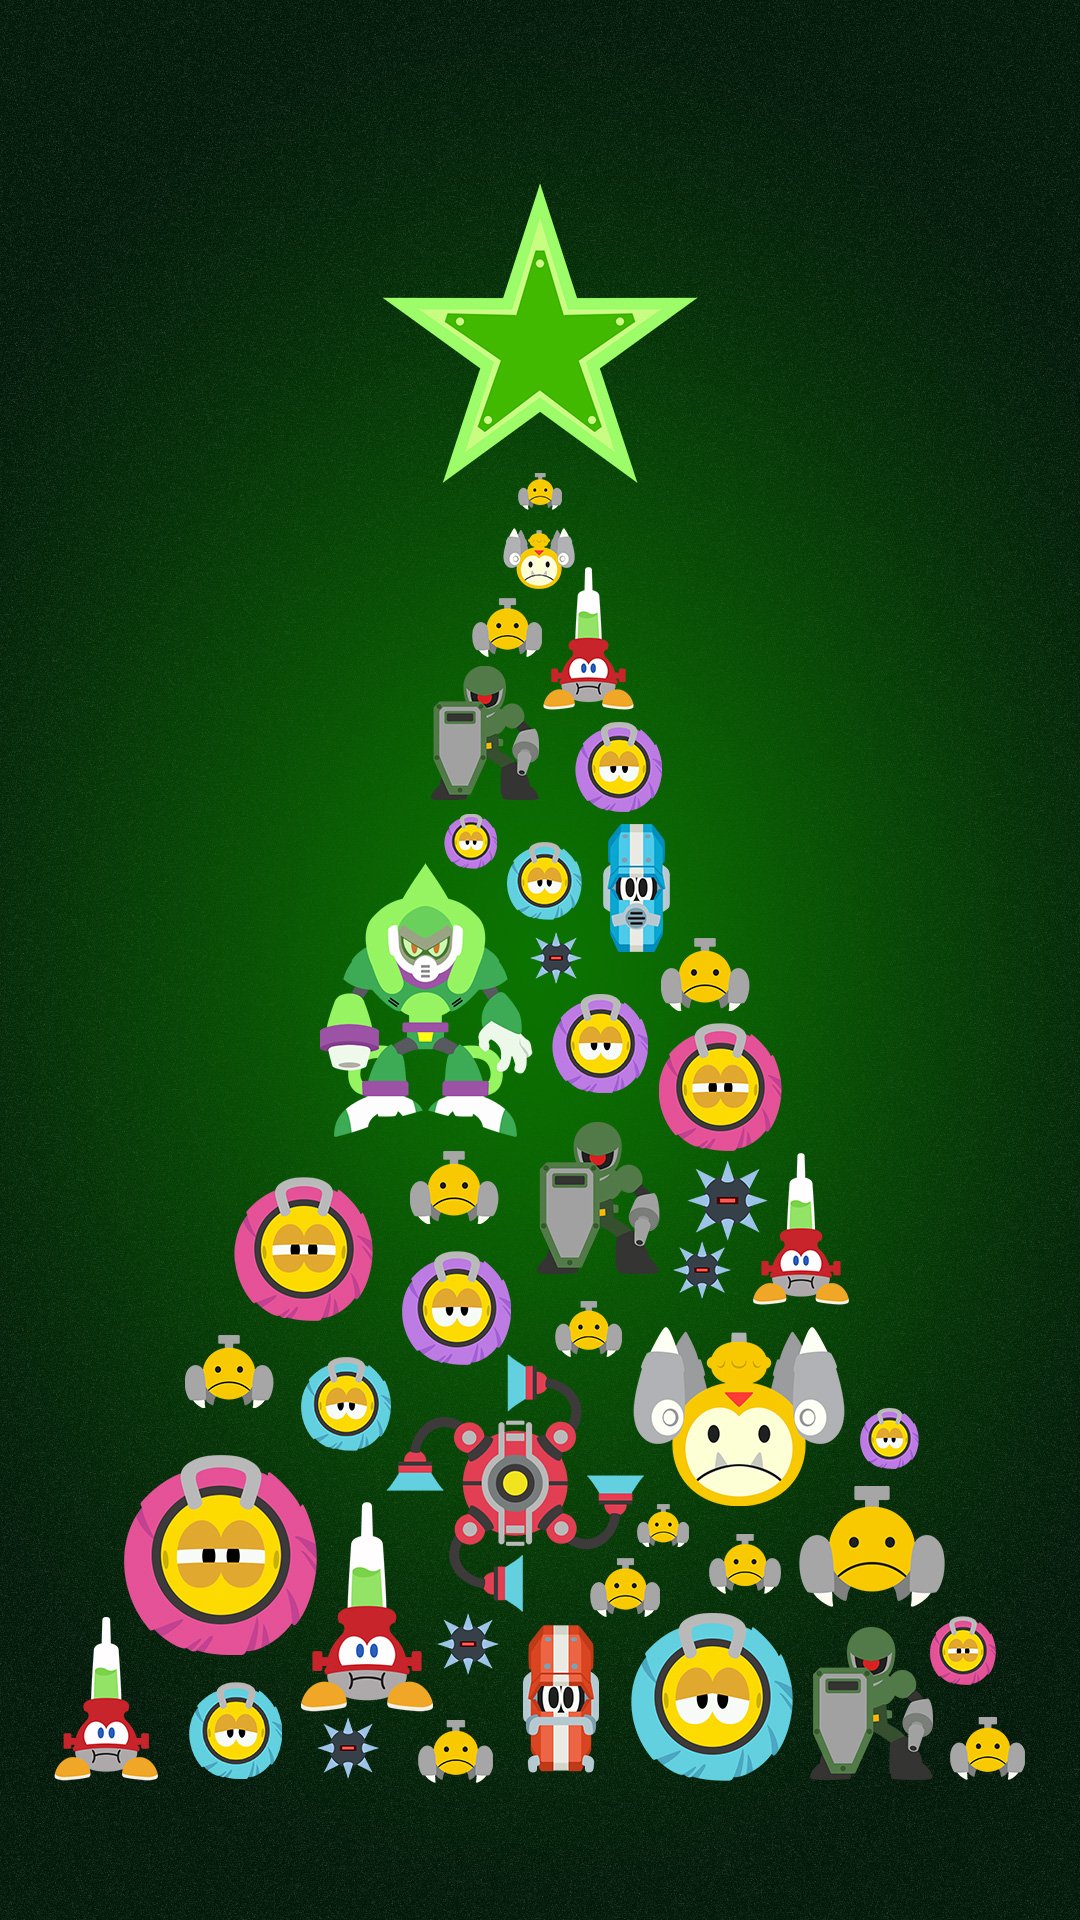 Rockman Unity 今回プレゼントしたクリスマス待ち受けはブロックマンメインですが 他のボスのクリスマスツリーが欲しい と言う方は ロックマン11推しボス をつけて欲しいボス名をつぶやいてください 推し度によって次のプレゼントを決定します